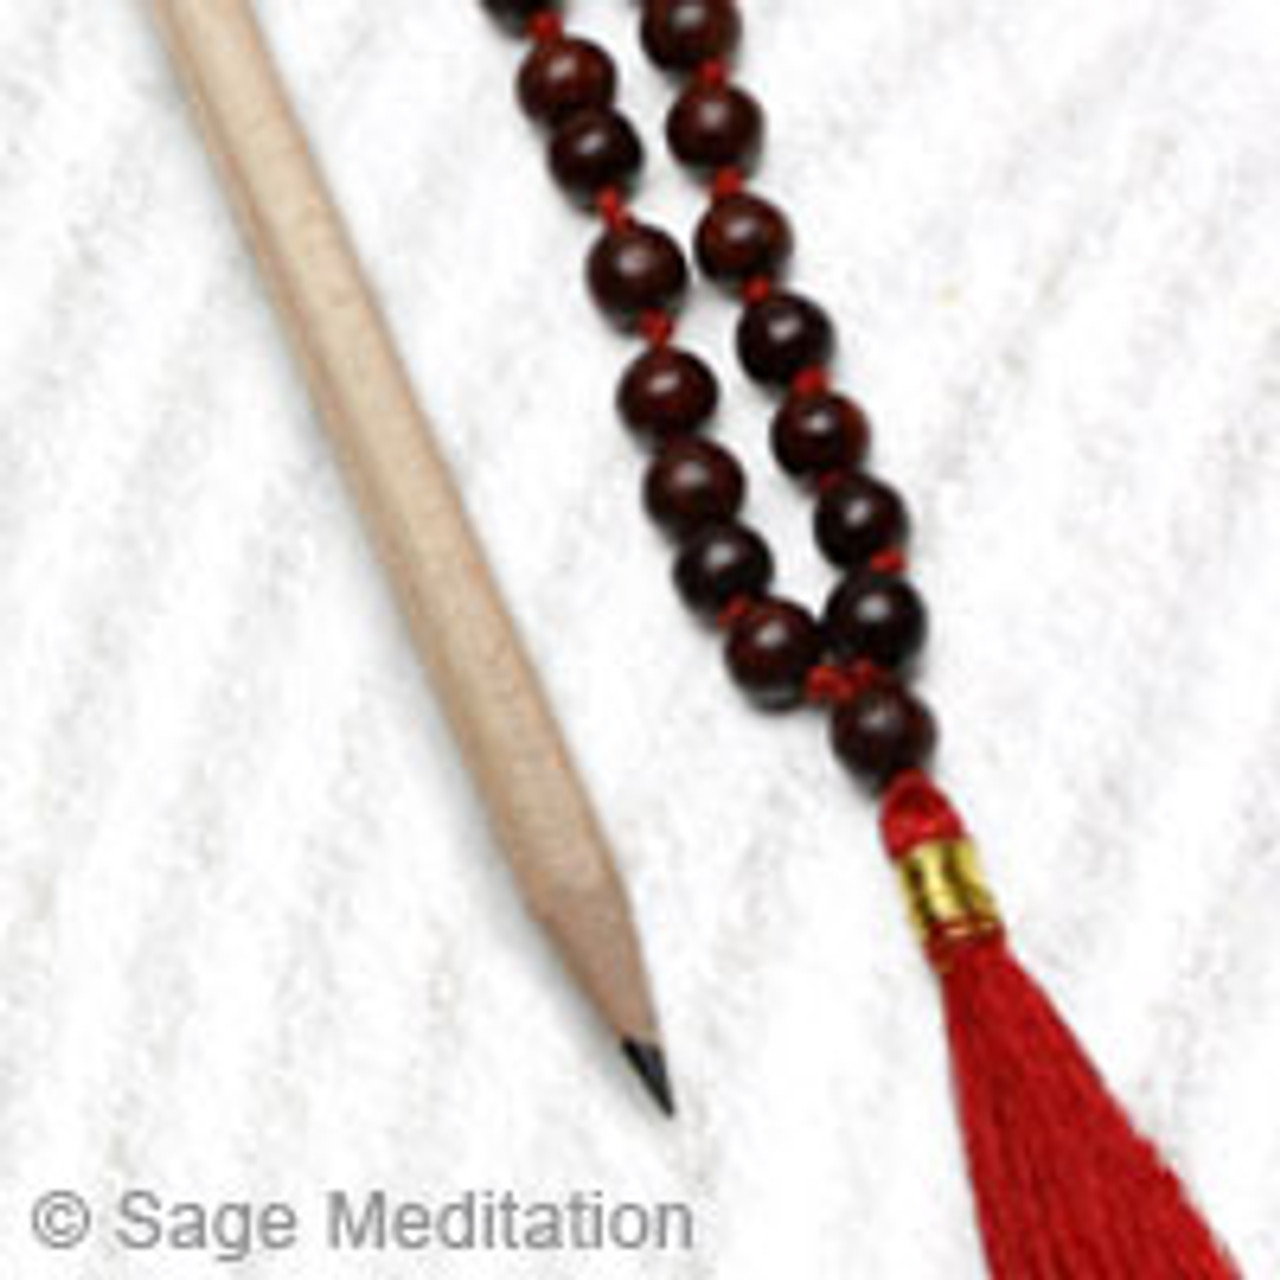 Rosewood Chakra Mala Necklace, Japa Mala, Wood Mala, Yoga Mala, Buddhist  Mala, 108 Prayer Beads, Om Mala, Spiritual Mala, Meditation Beads -   Canada